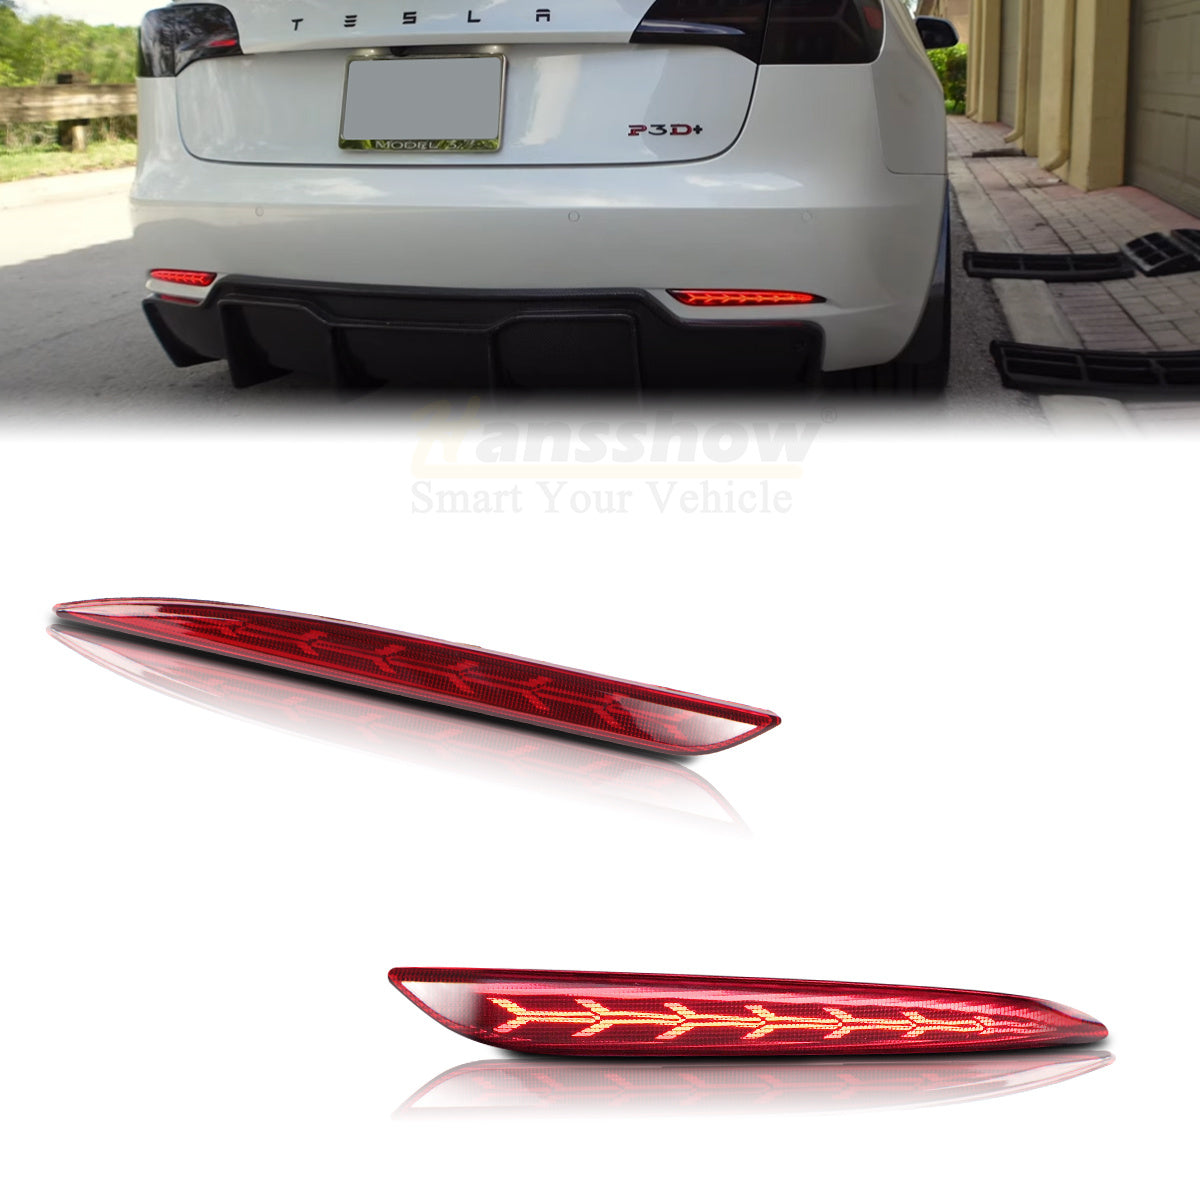 Model 3 rear bumper reflector light